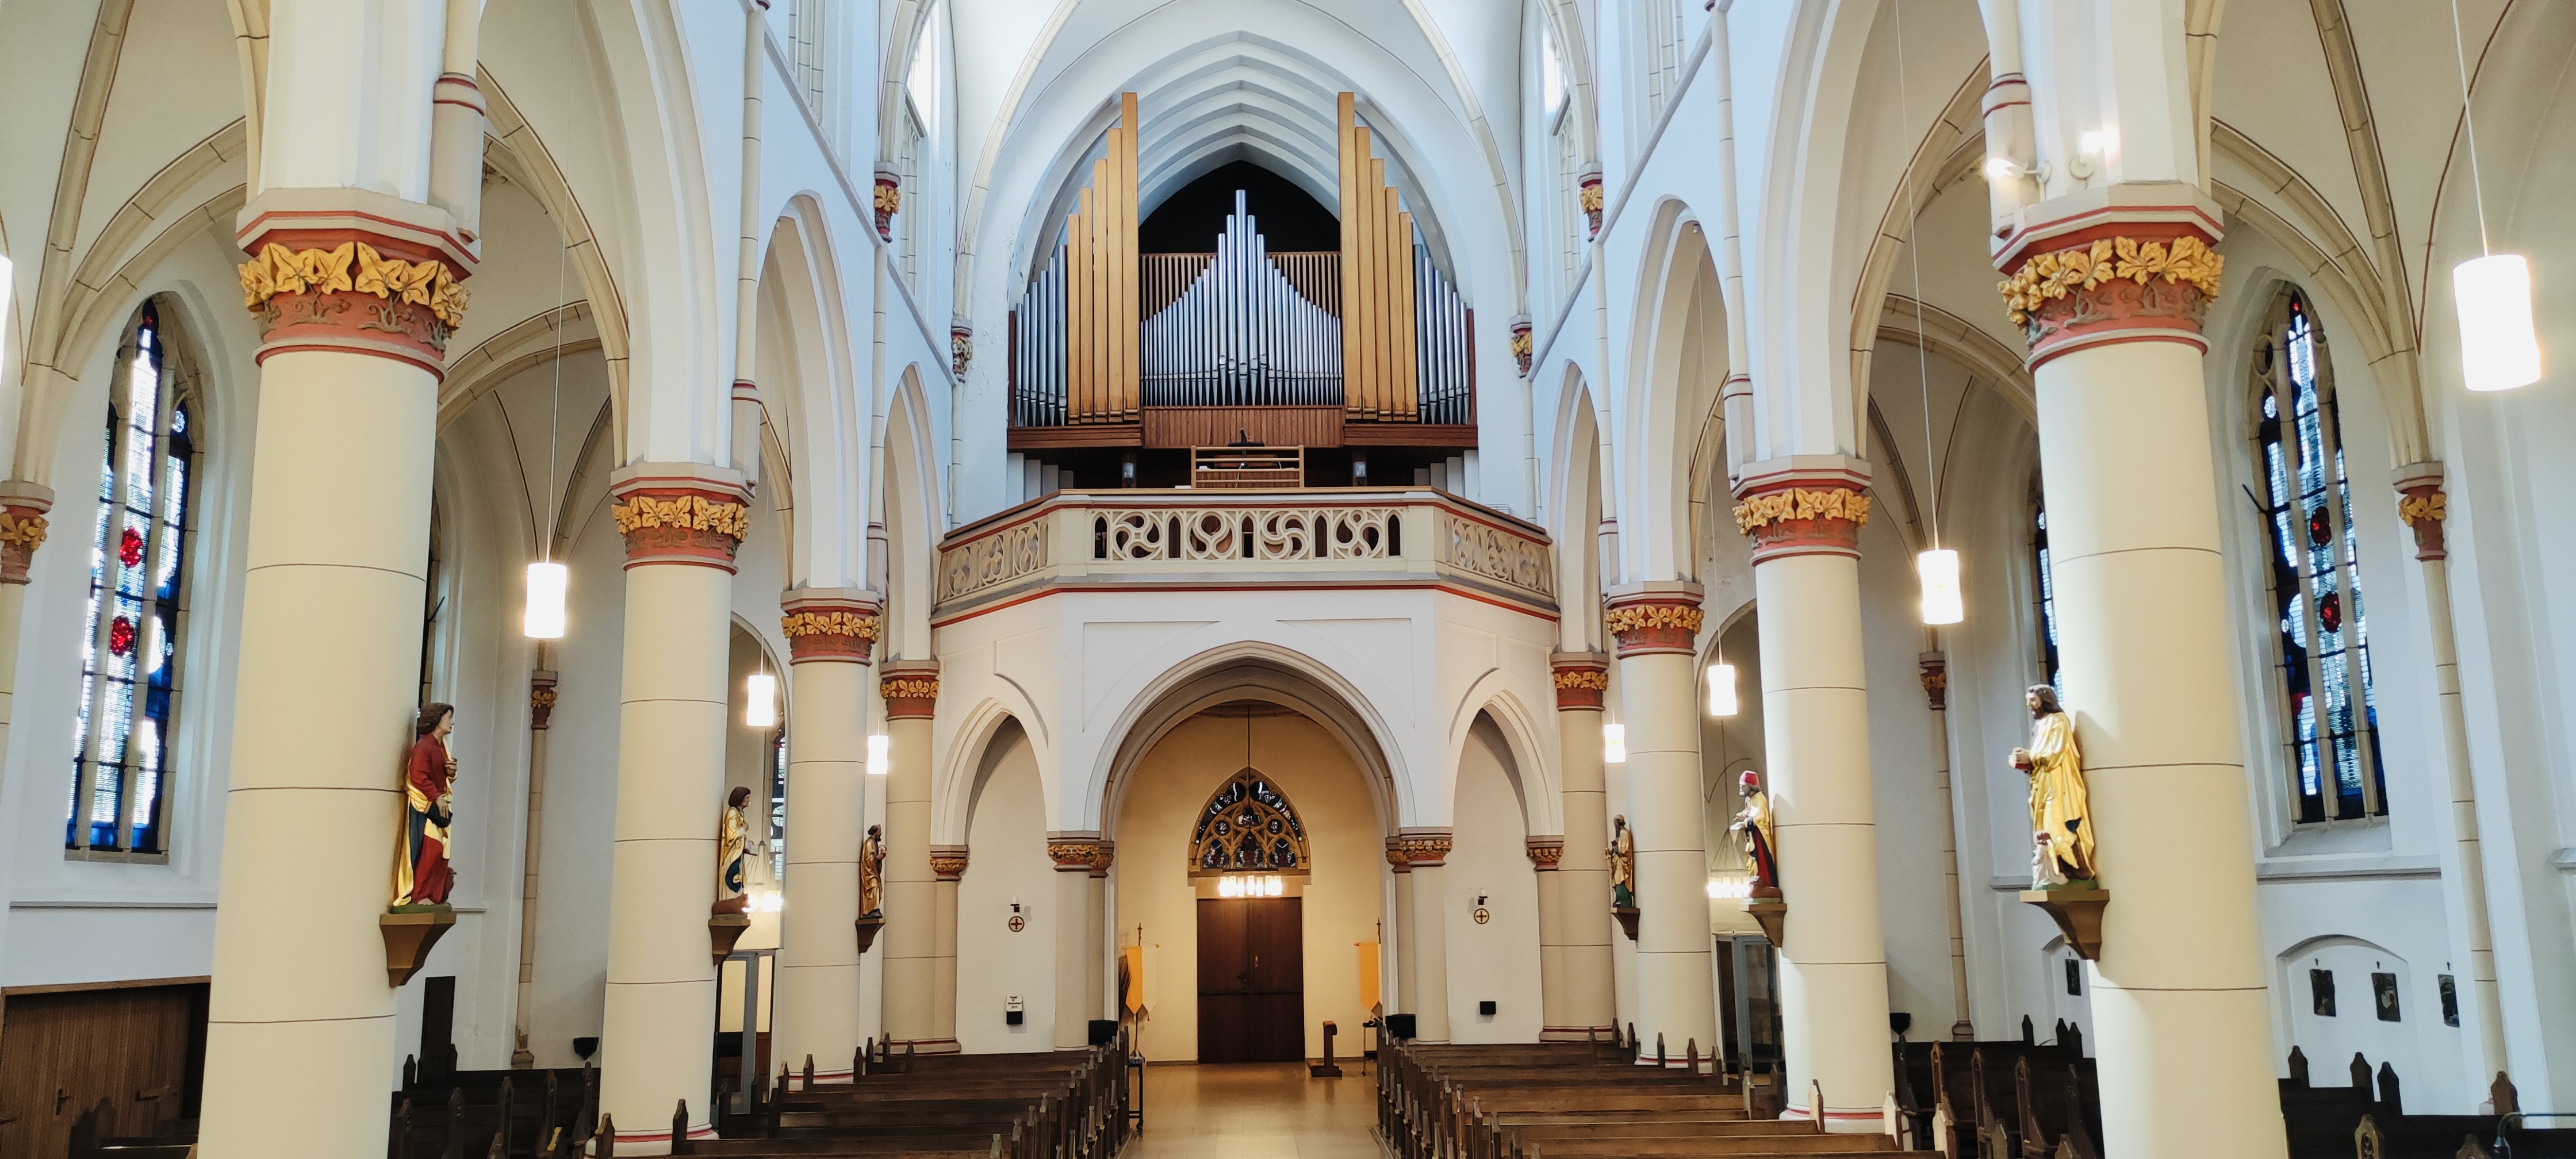 St. Joseph Innen Quer Richtung Orgel